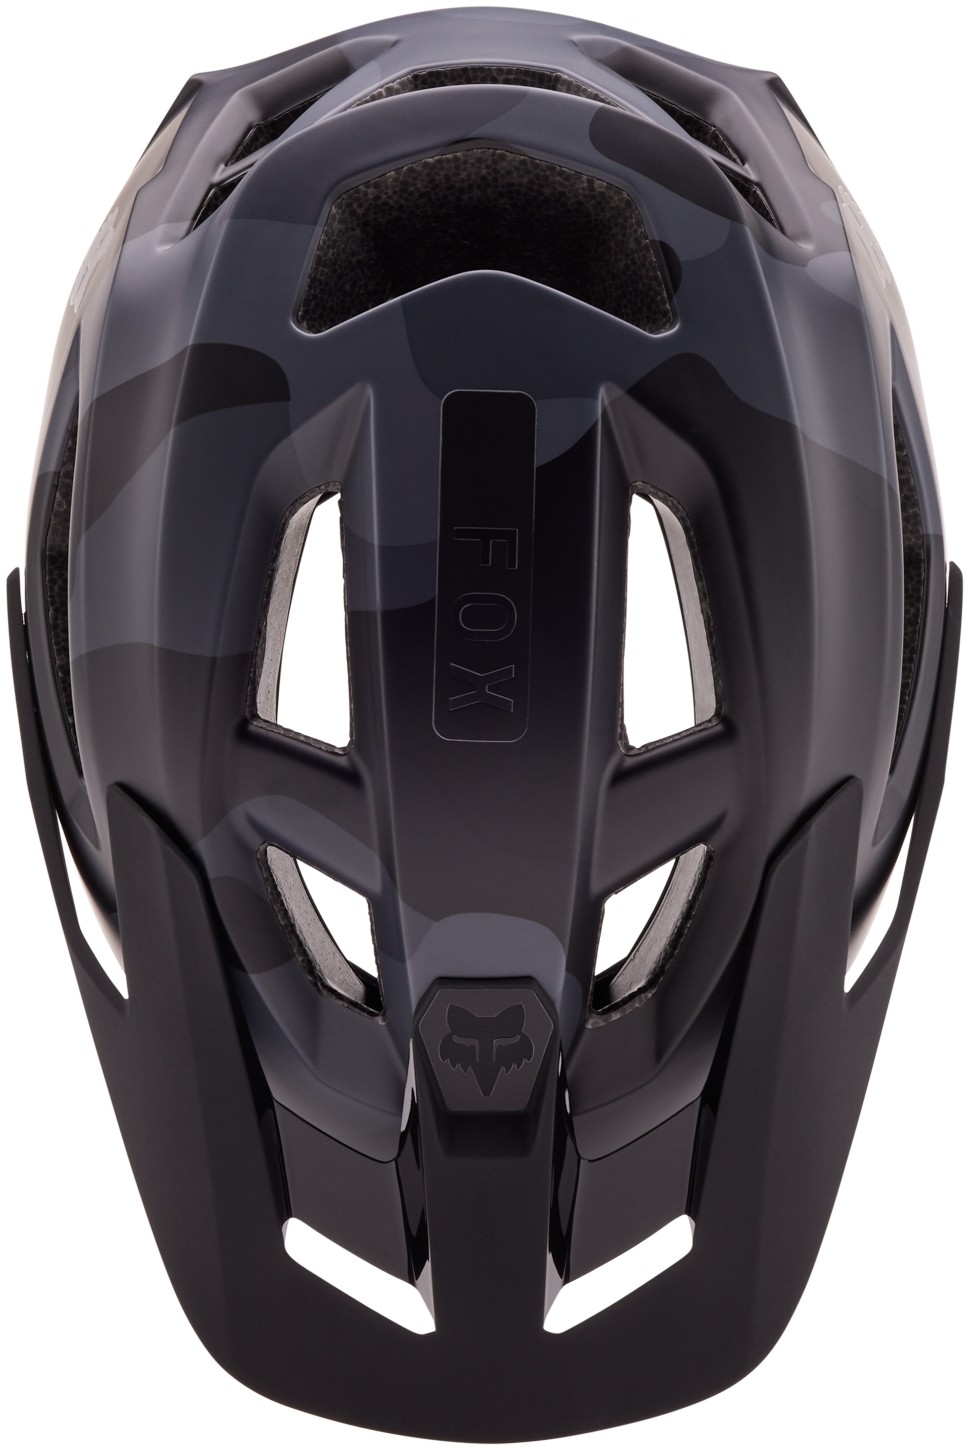 Speedframe Camo Mips MTB Helmet image 2